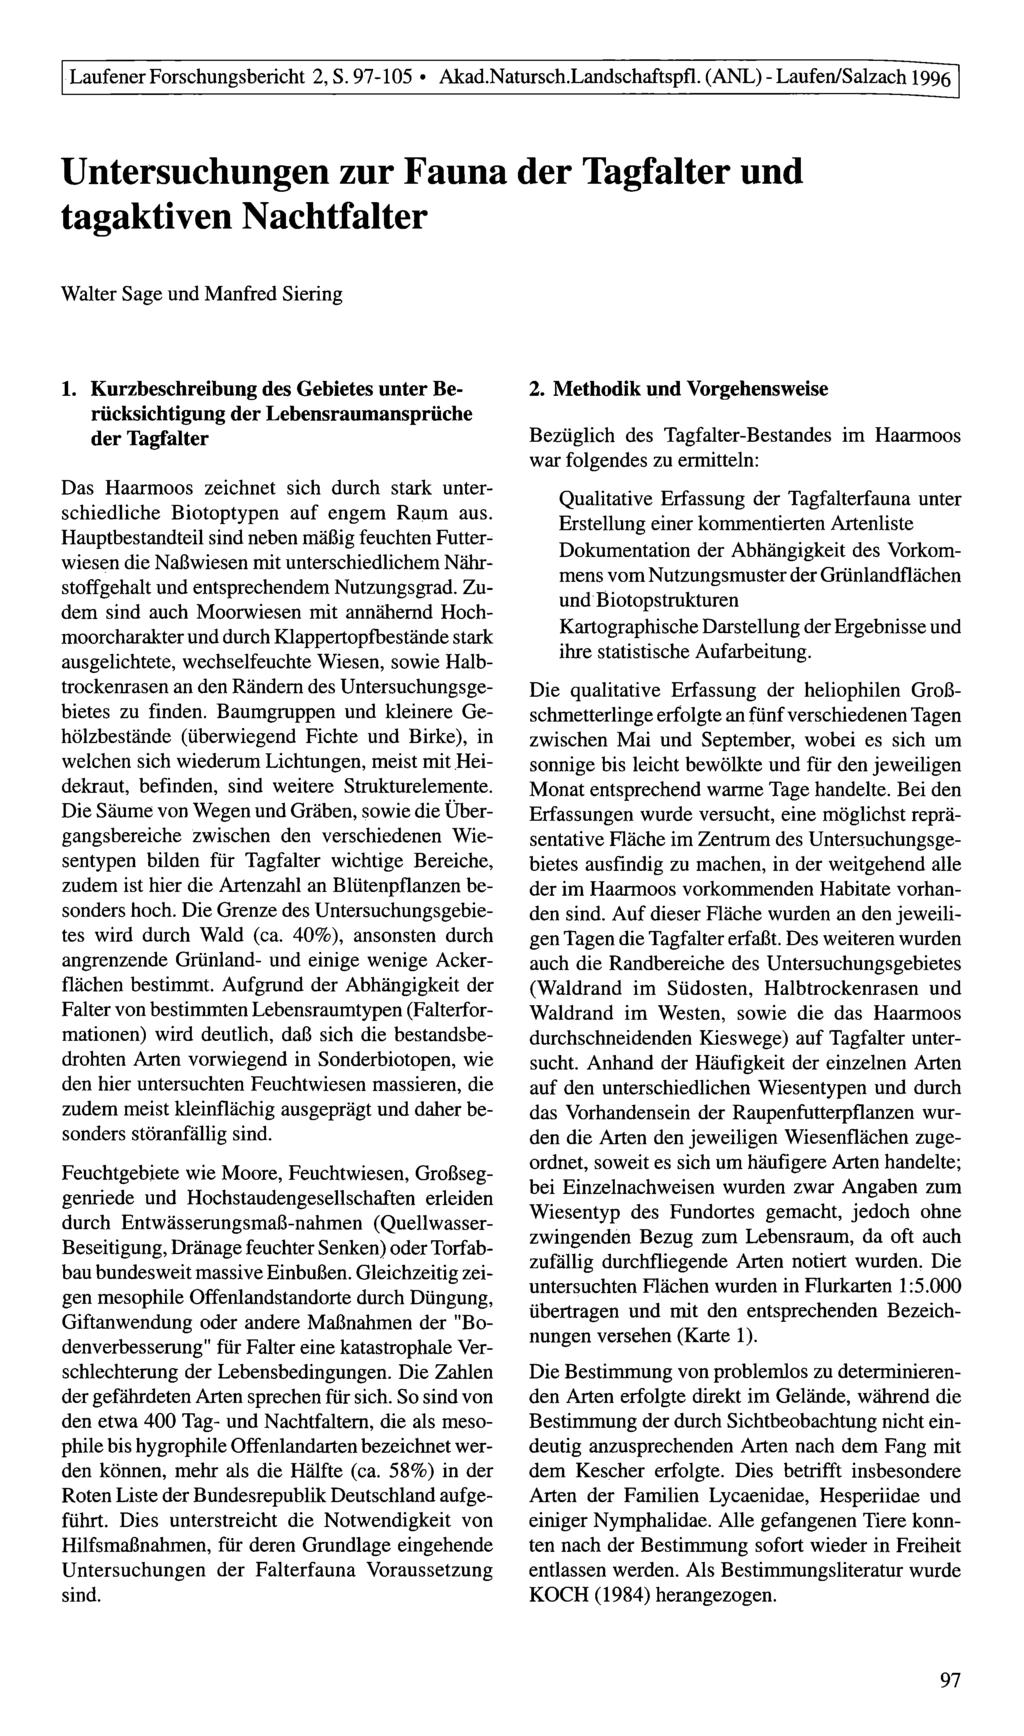 Laufener Forschungsbericht 2, S. 97-105 Akad.Natursch.Landschaftspfl. (ANL) - Laufen/Salzach 1996 Untersuchungen zur Fauna der Tagfalter und tagaktiven Nachtfalter Walter Sage und Manfred Siering 1.